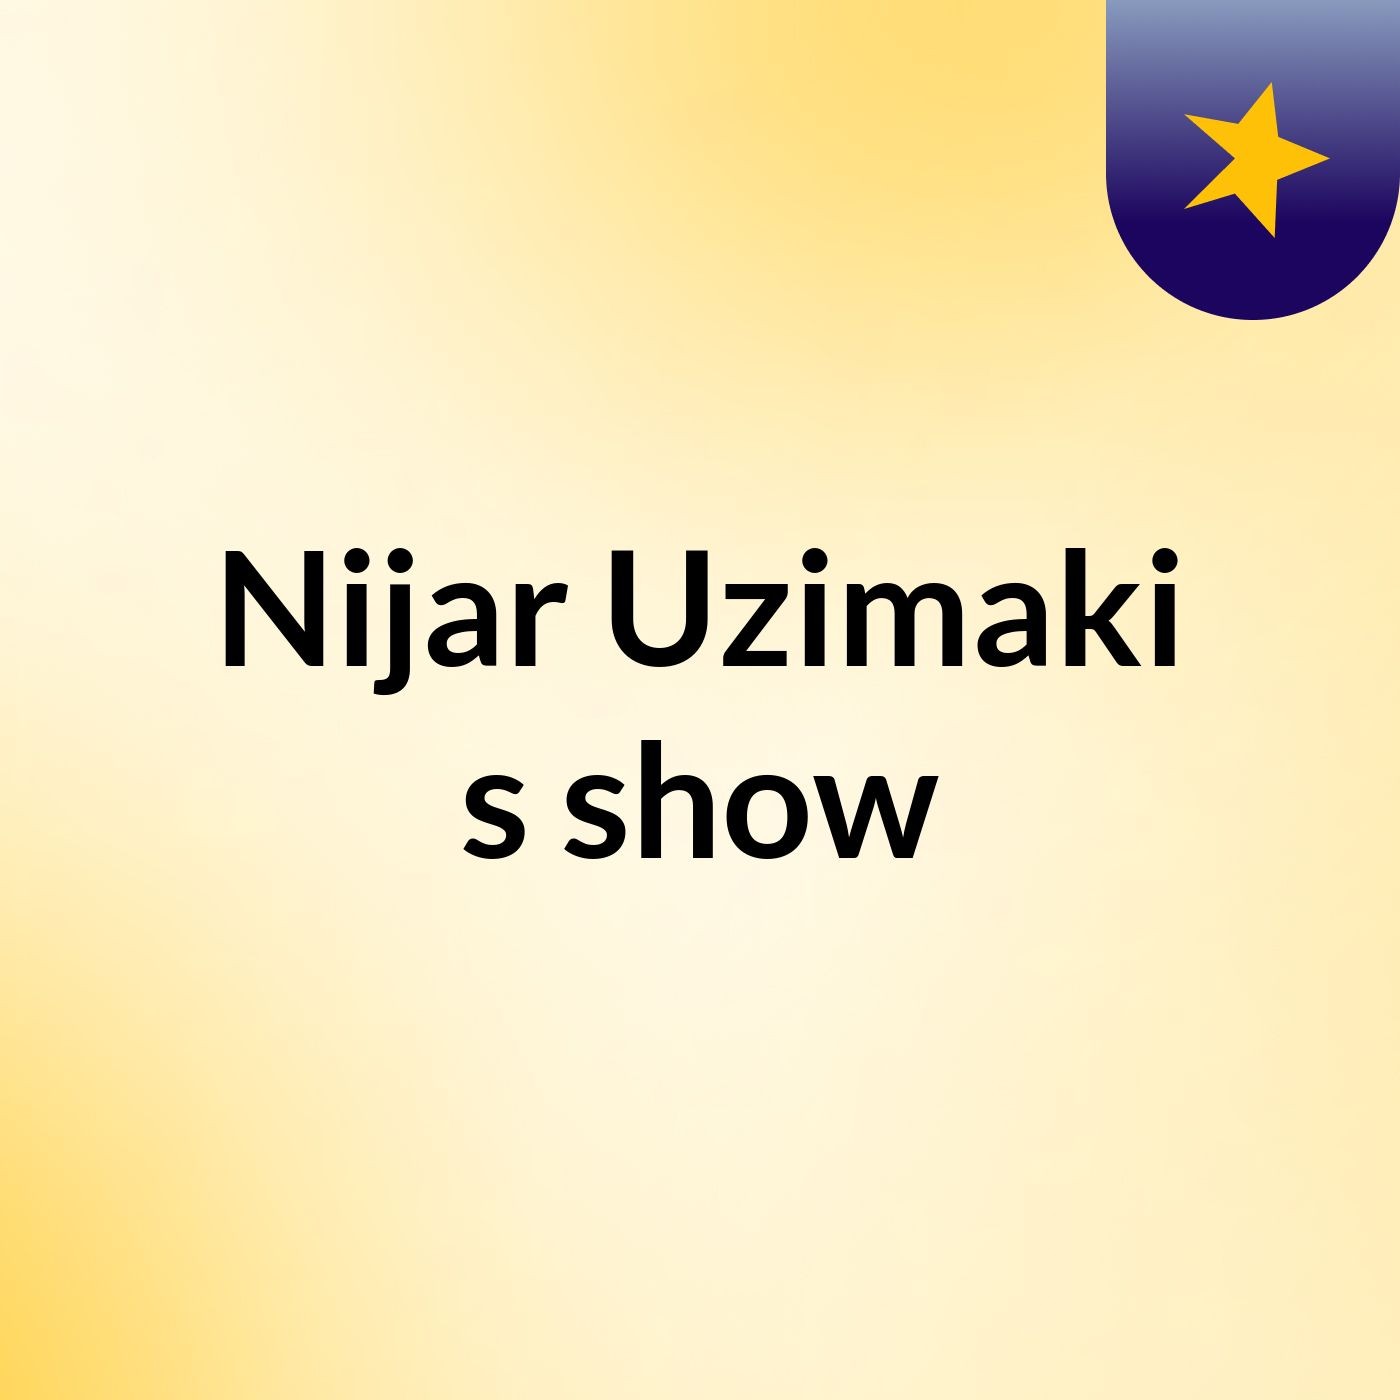 Nijar Uzimaki's show